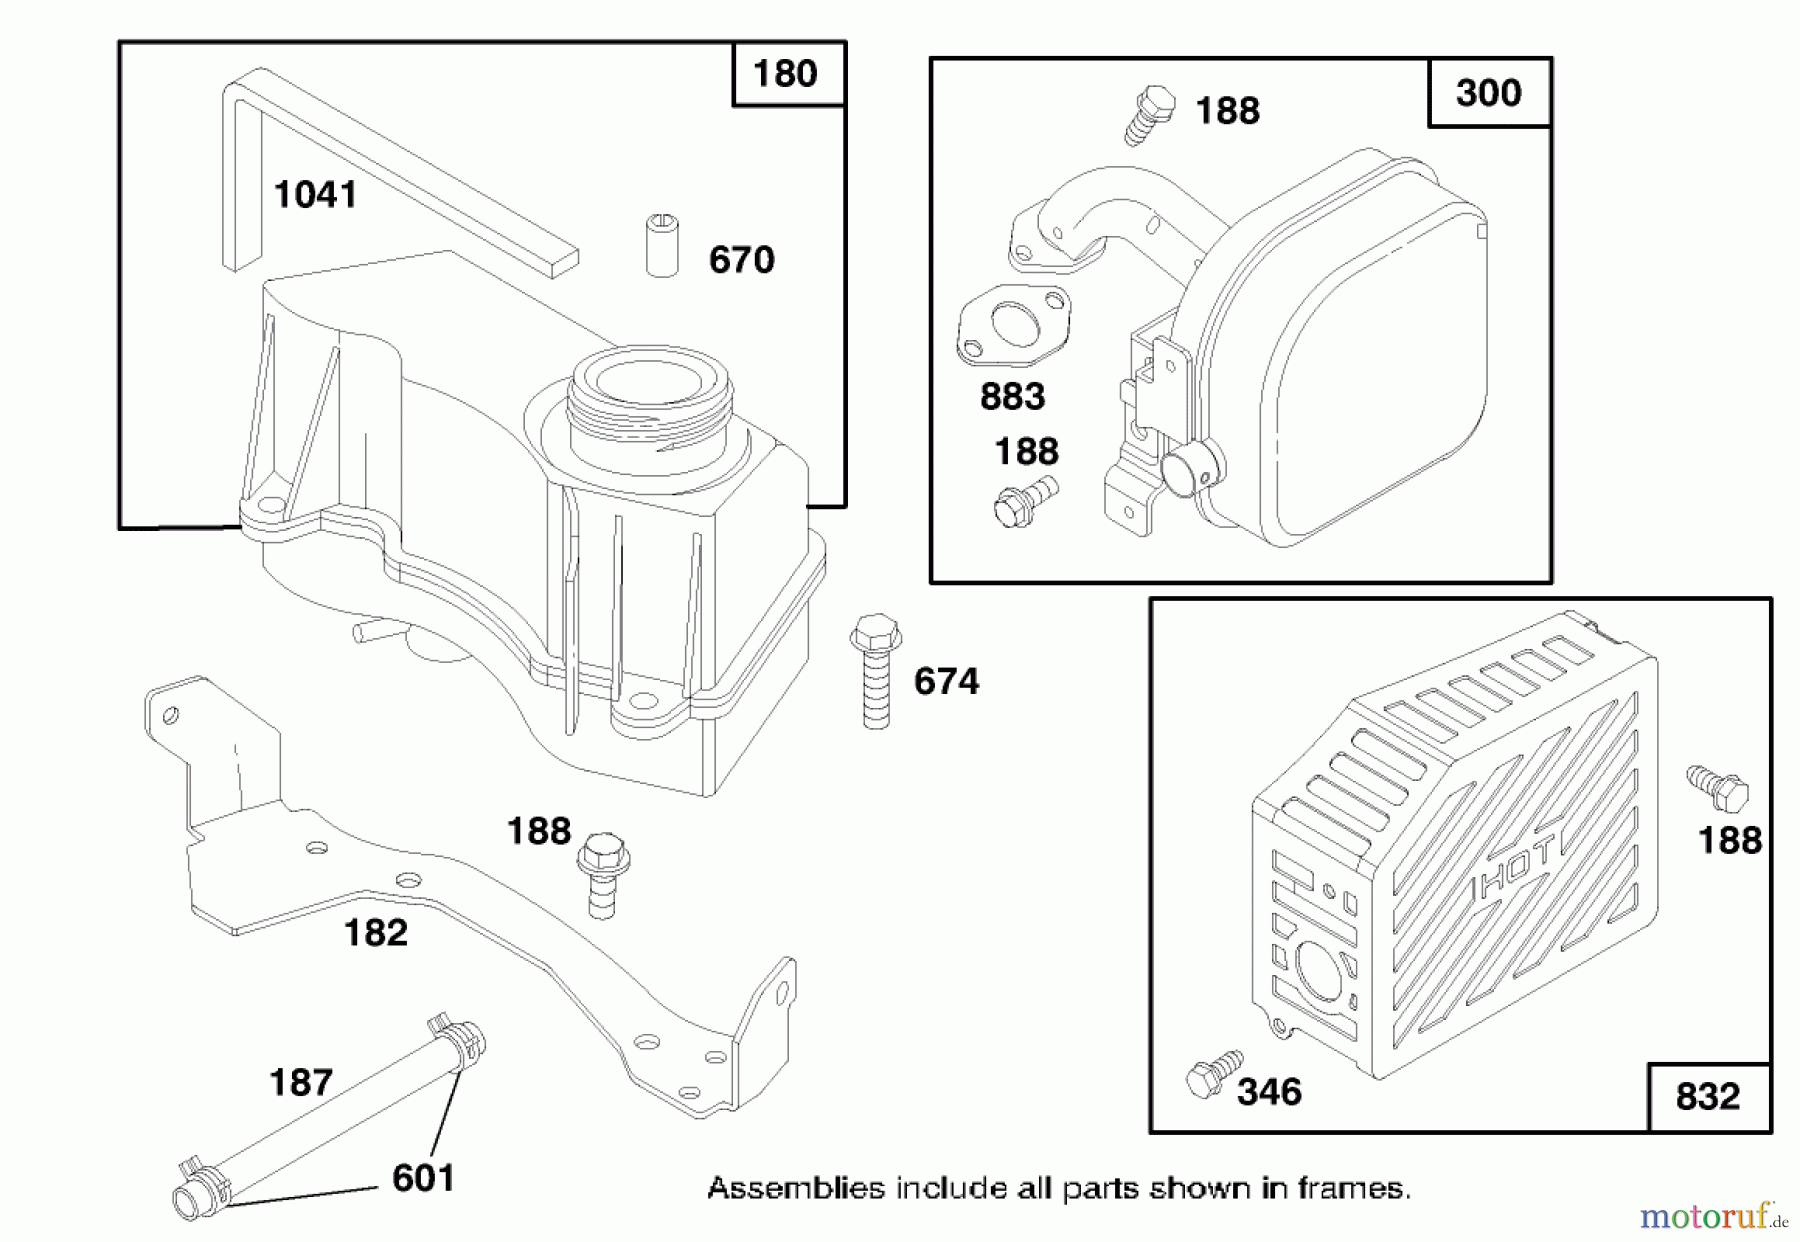  Toro Neu Mowers, Walk-Behind Seite 1 20474 - Toro Super Recycler Lawnmower, 1996 (6900001-6999999) ENGINE GTS 150 #8